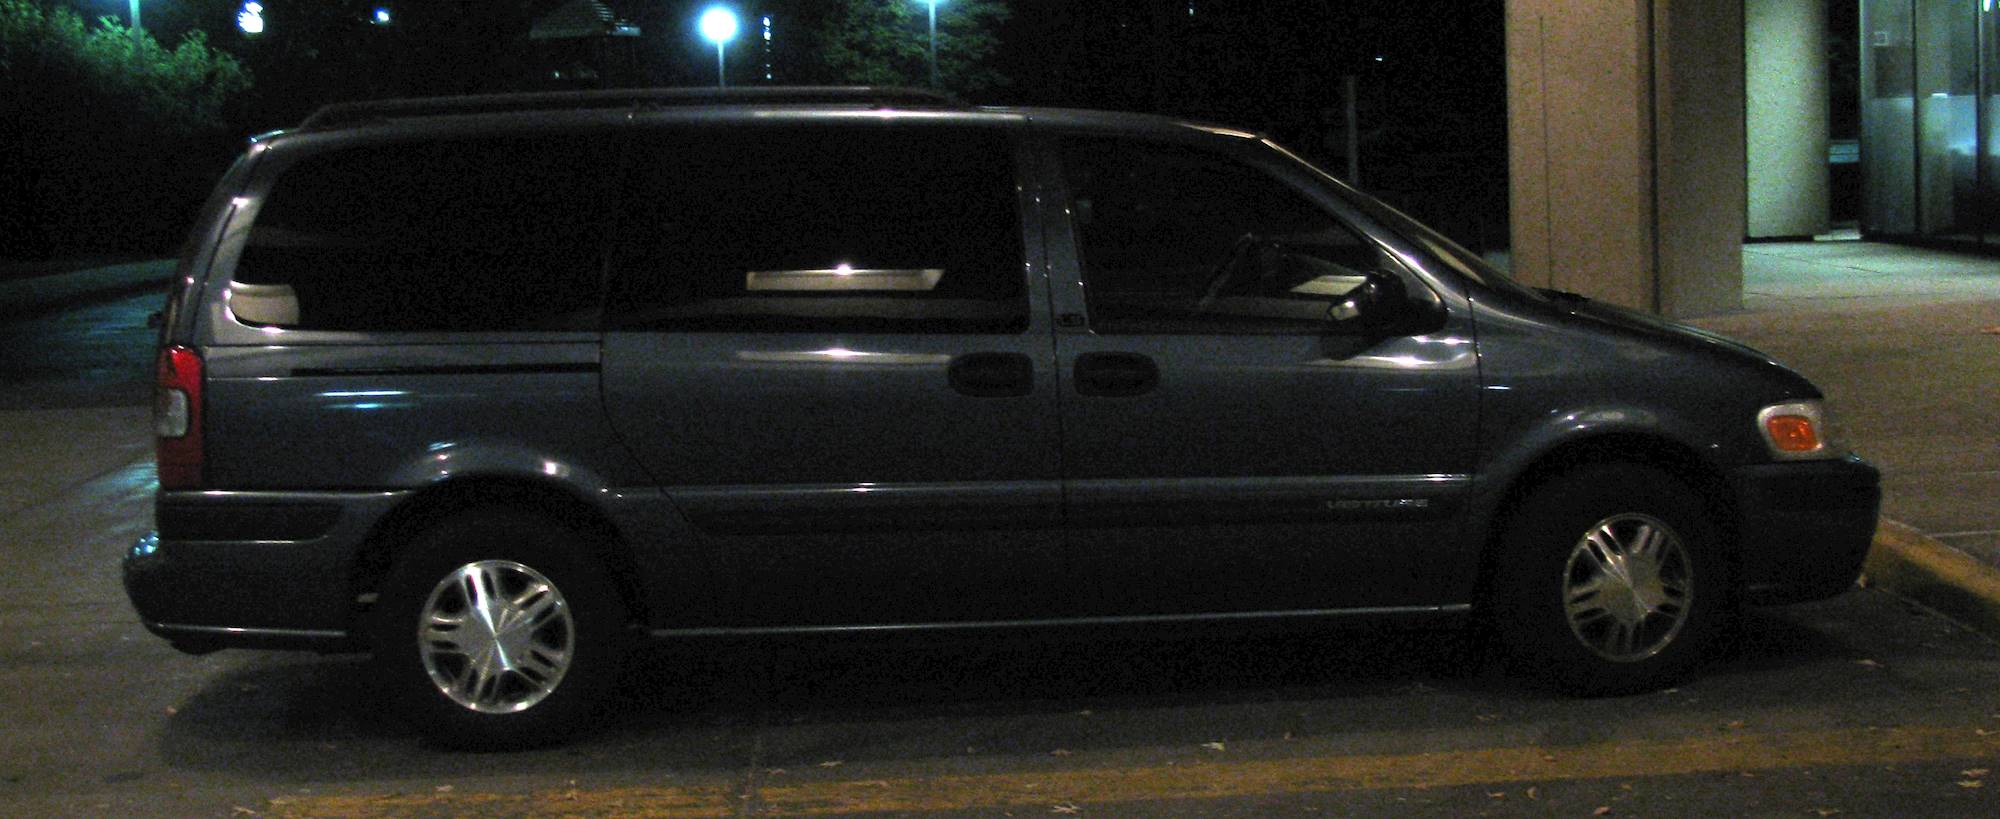 2005 Chevrolet Venture Plus - Passenger Minivan 3.4L V6 auto